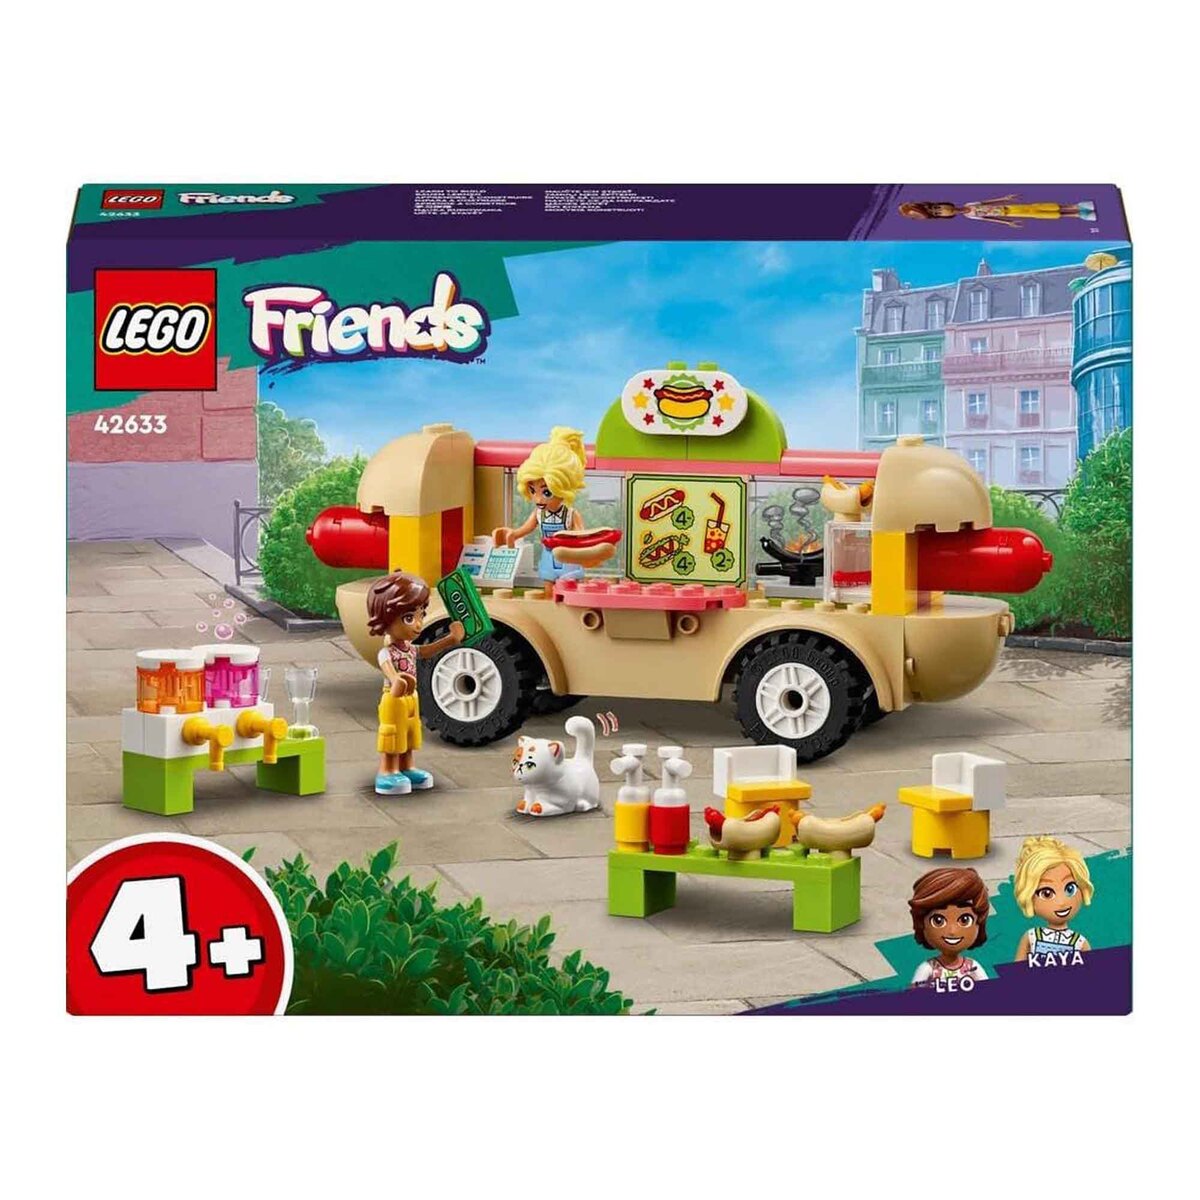 Lego Hot Dog Food Truck, 8 pcs, 42633